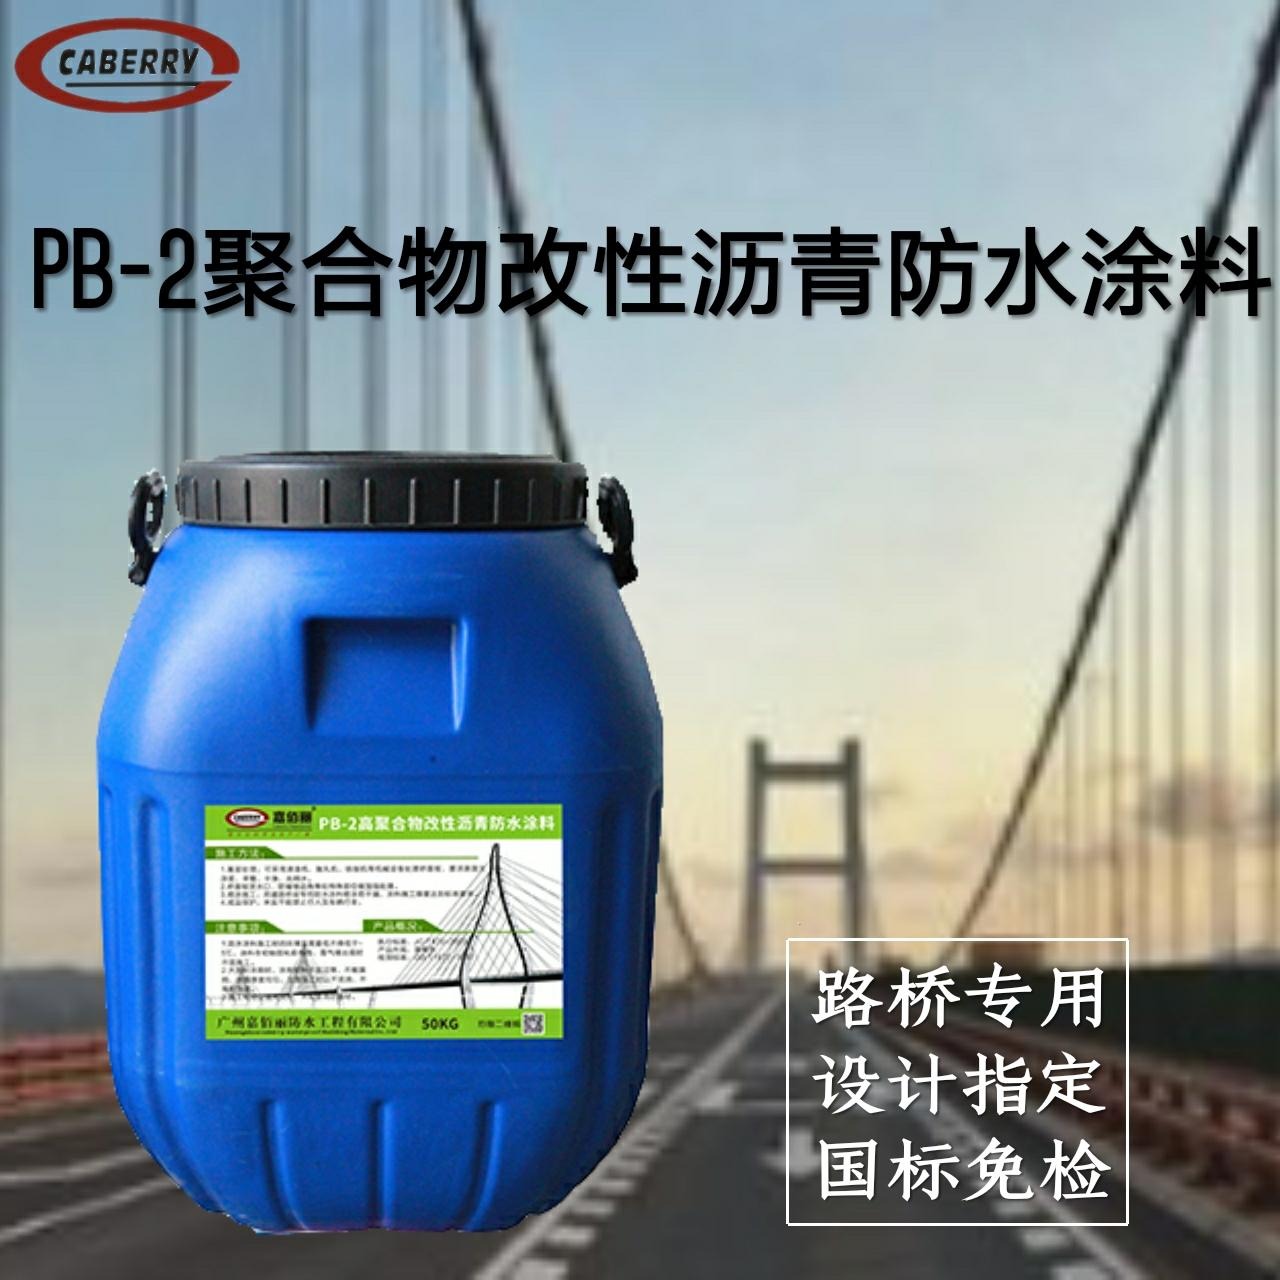 PB-2聚合物改性沥青防水涂料 各项指标满足图纸设计要求